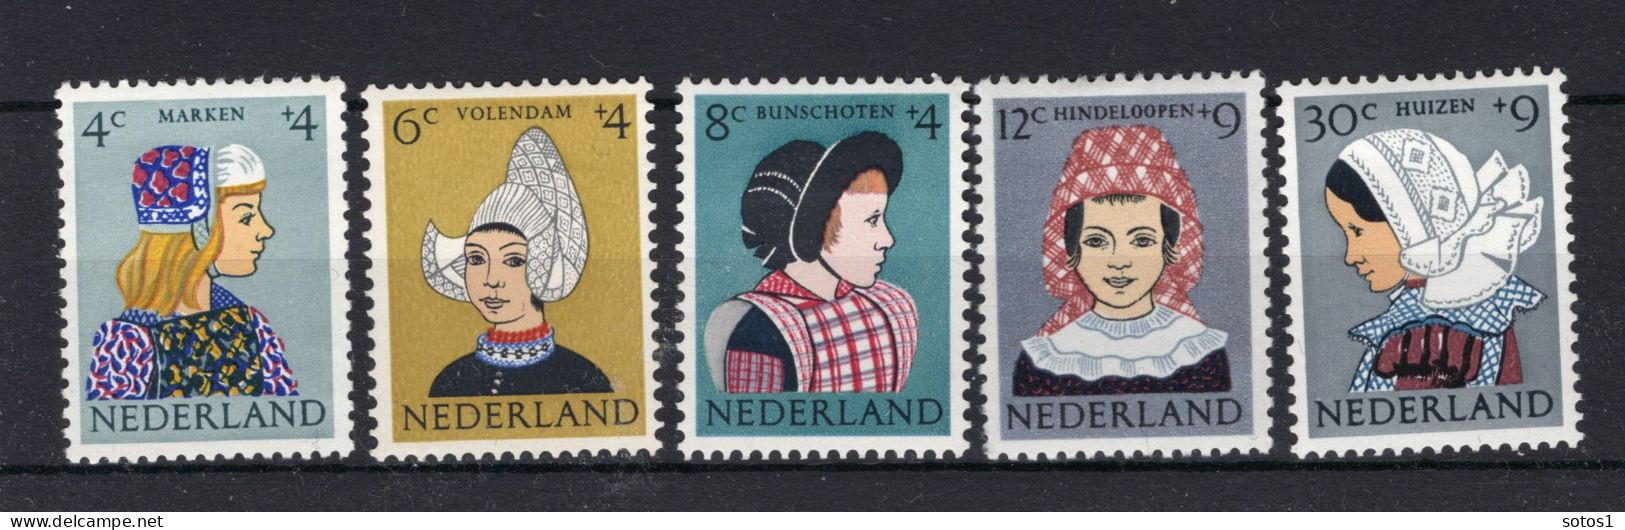 NEDERLAND 747/751 MH 1960 - Kinderzegels, Klederdrachten - Unused Stamps